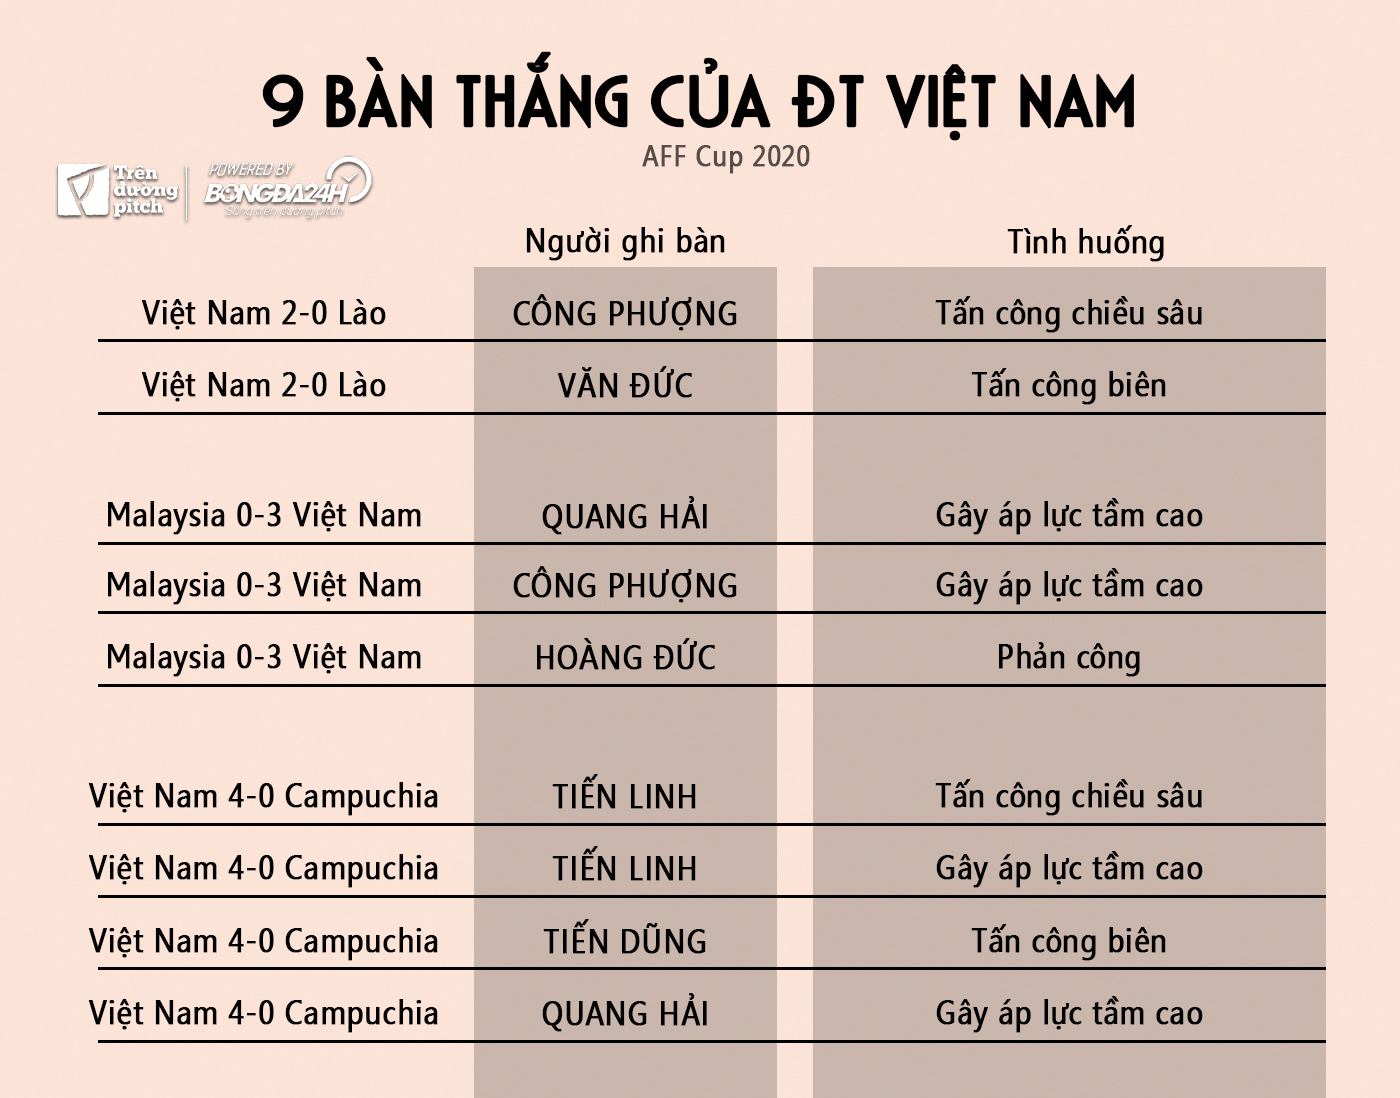 Những dấu ấn chiến thuật của Việt Nam tại AFF Cup 2020